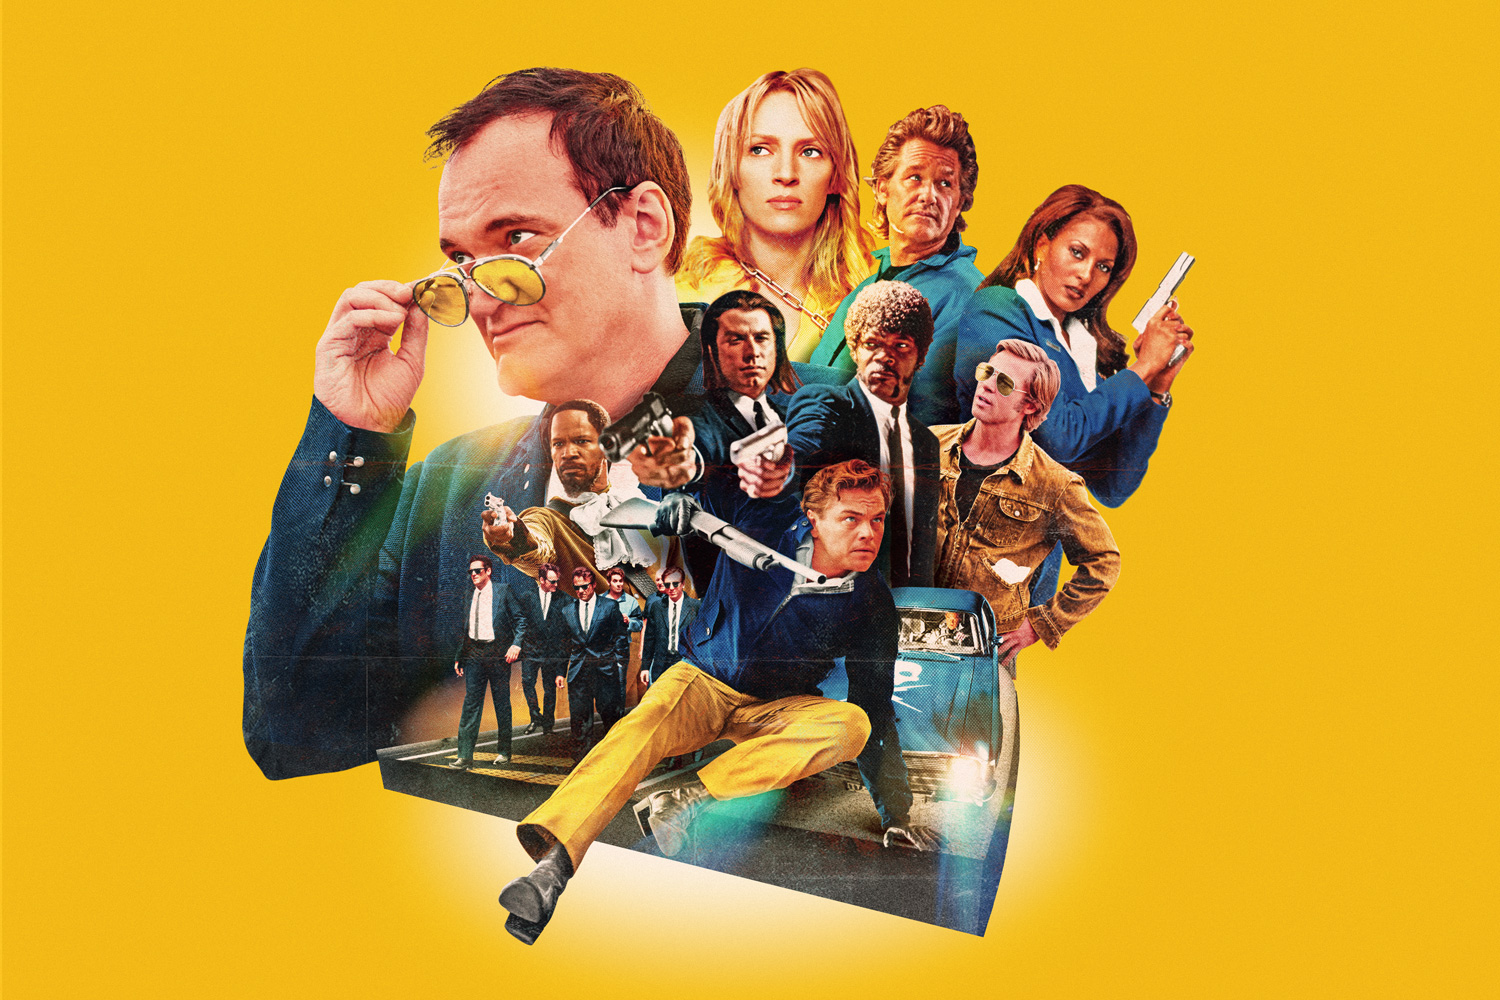 “Meditaciones de cine”: el imperdible nuevo libro de Quentin Tarantino para fanáticos del séptimo arte